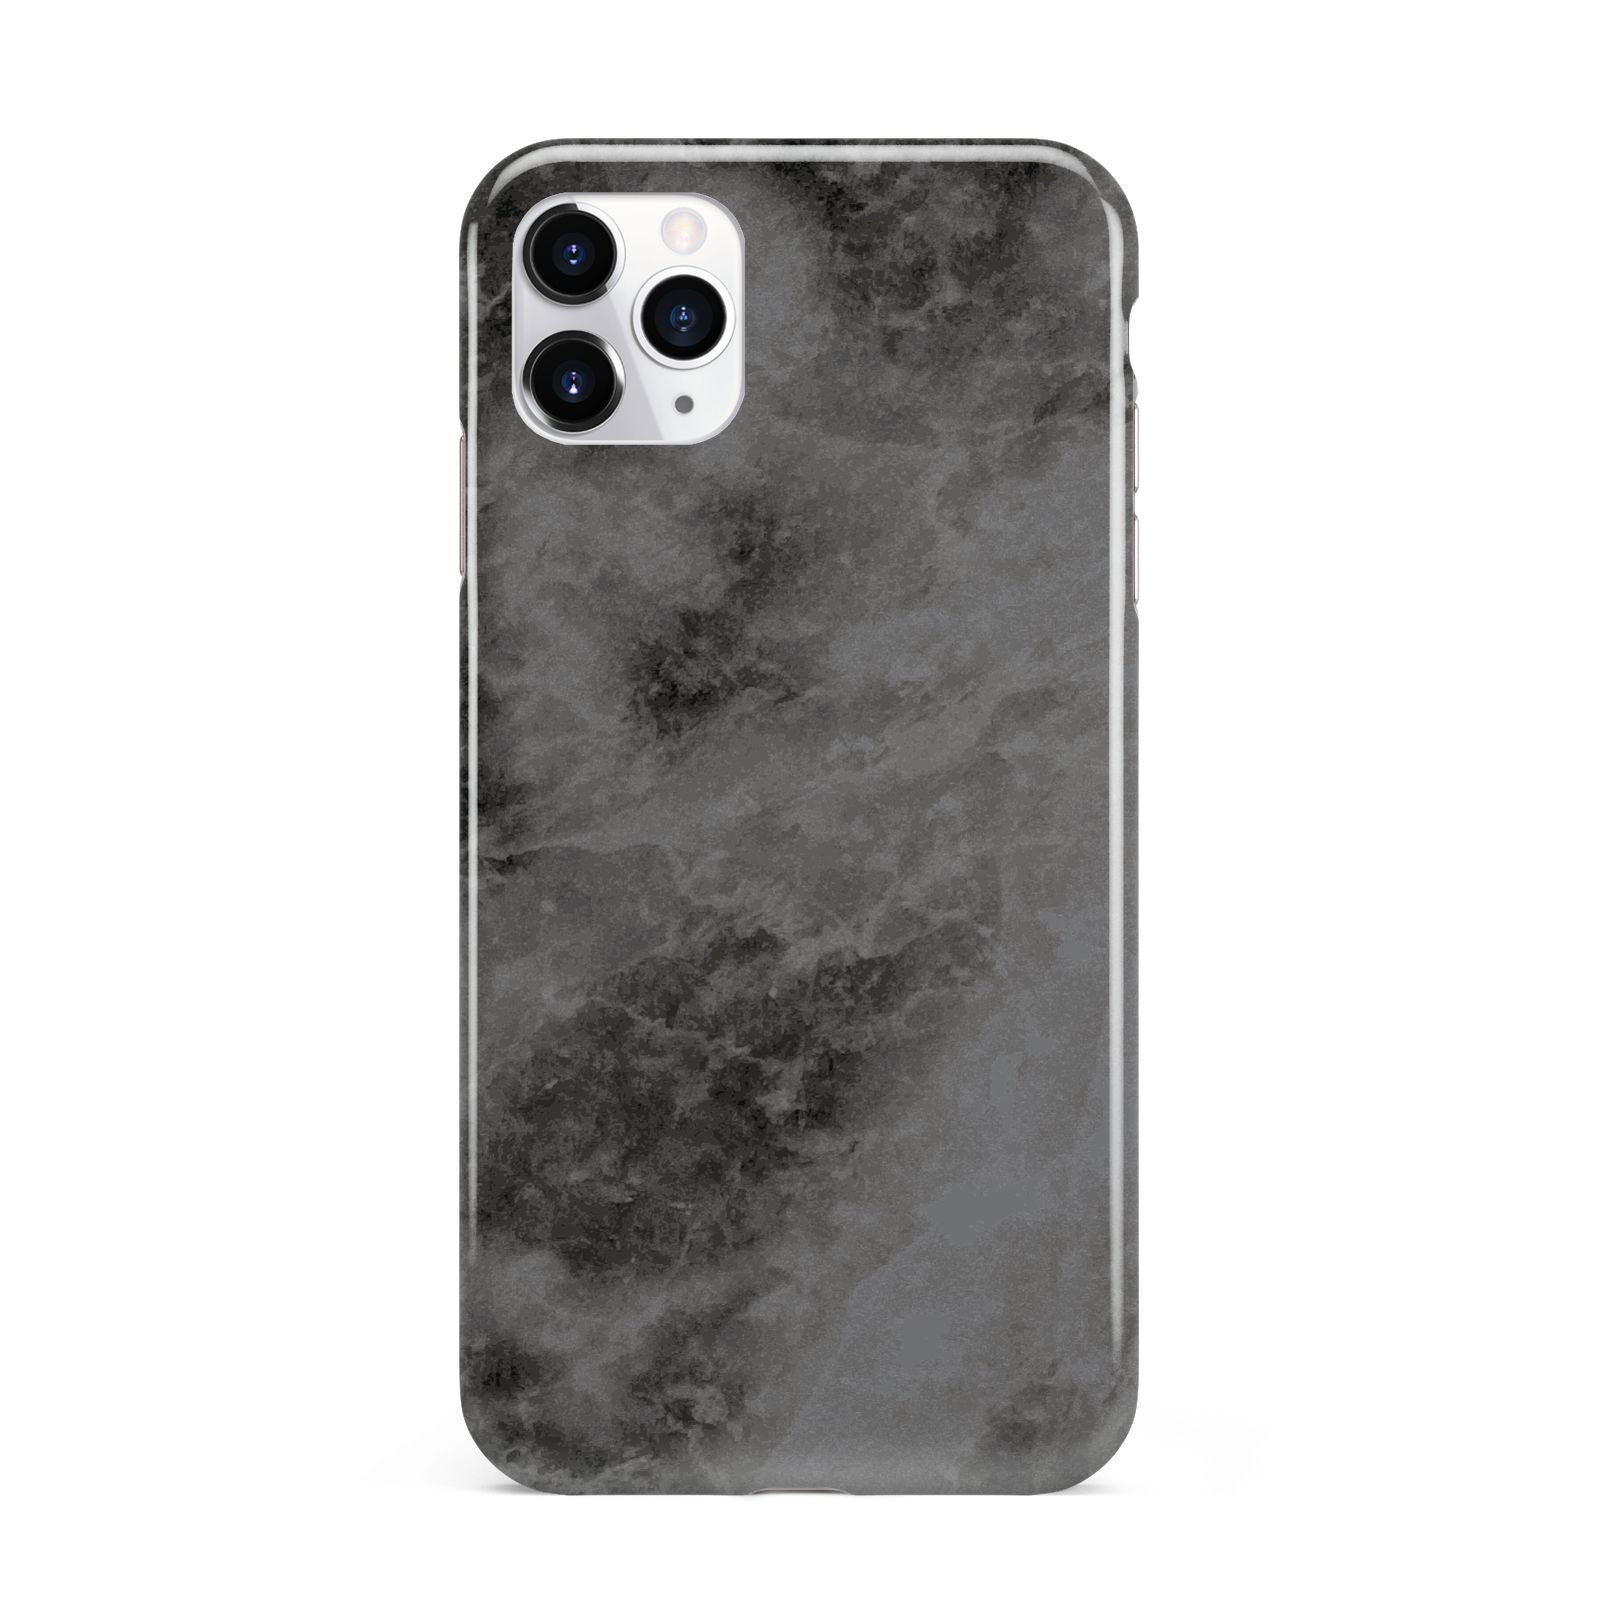 Faux Marble Grey Black iPhone 11 Pro Max 3D Tough Case